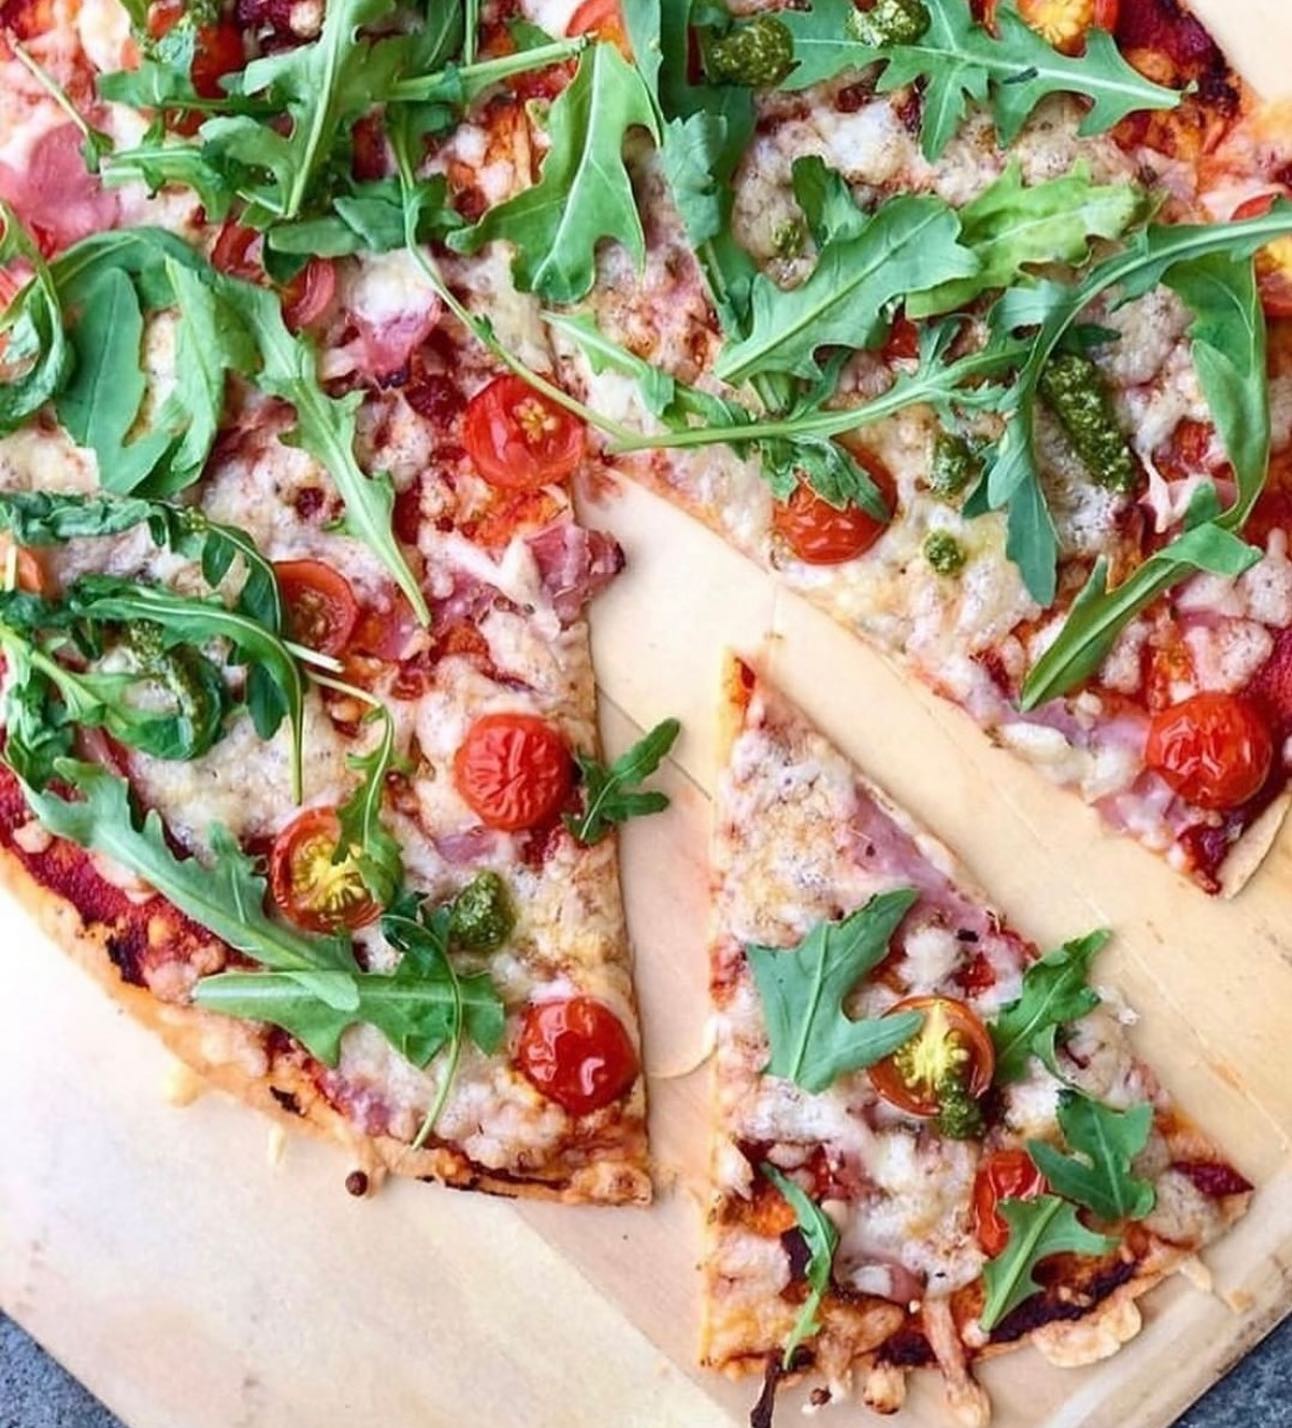 🍕 Tortillapizza på 10 minutter 🍕

En super nem måde at lave pizza på. En dejlig nem hverdagsret, hvor alle i familien kan lave en med deres favoritfyld på 🌟

Hvad er din yndlingstopping?

Jeg går altid efter mascarpone/kartoffel/rosmarin eller en med parma/pesto/rucola 😃

💡 Husk at du  kan gemme opslaget nederst i højre hjørne på bogmærket
💡Opskriften findes på www.madmusen.dk søg på “pizza”

#sundmad #nrkmat #godtno #svenskmat #aftensmad #middag #deldinmad #abendesen #sunnmat #børnevenligmad #dinner #nemmad #instafood #skinke #tortilla #parma #tortillapizza 
#hverdagsmad #hverdagsmat